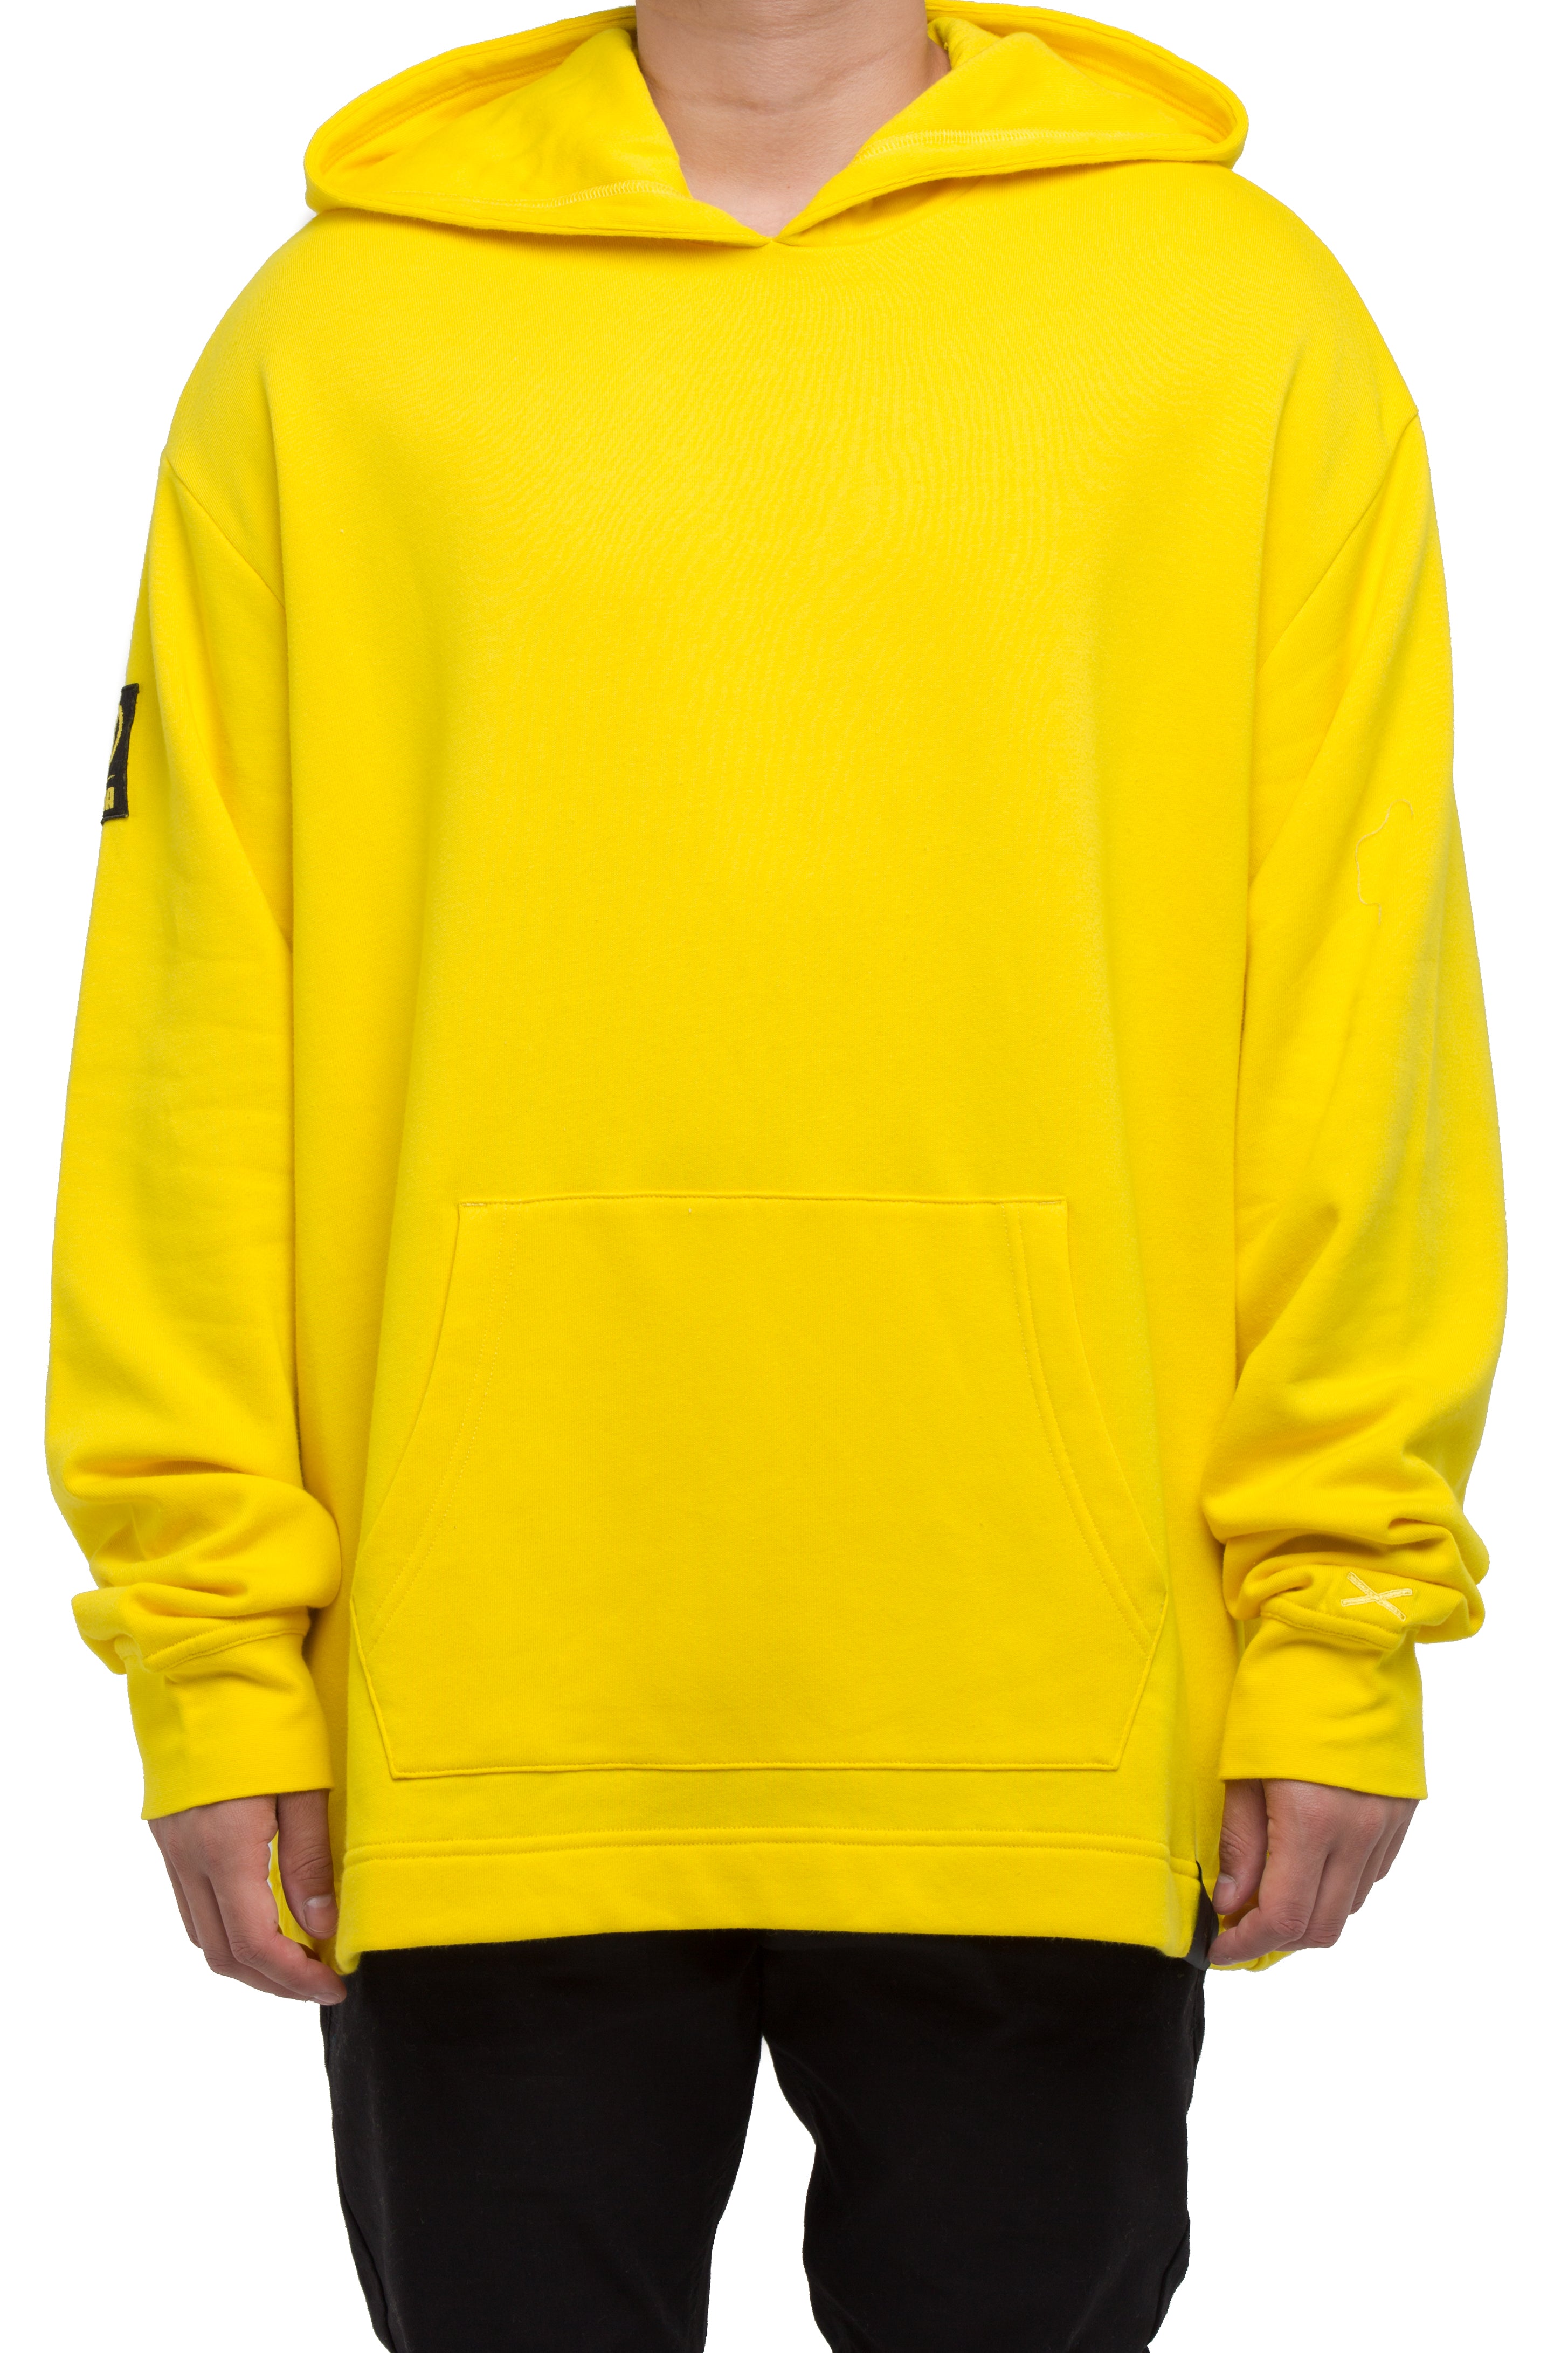 puma x xo hoodie yellow